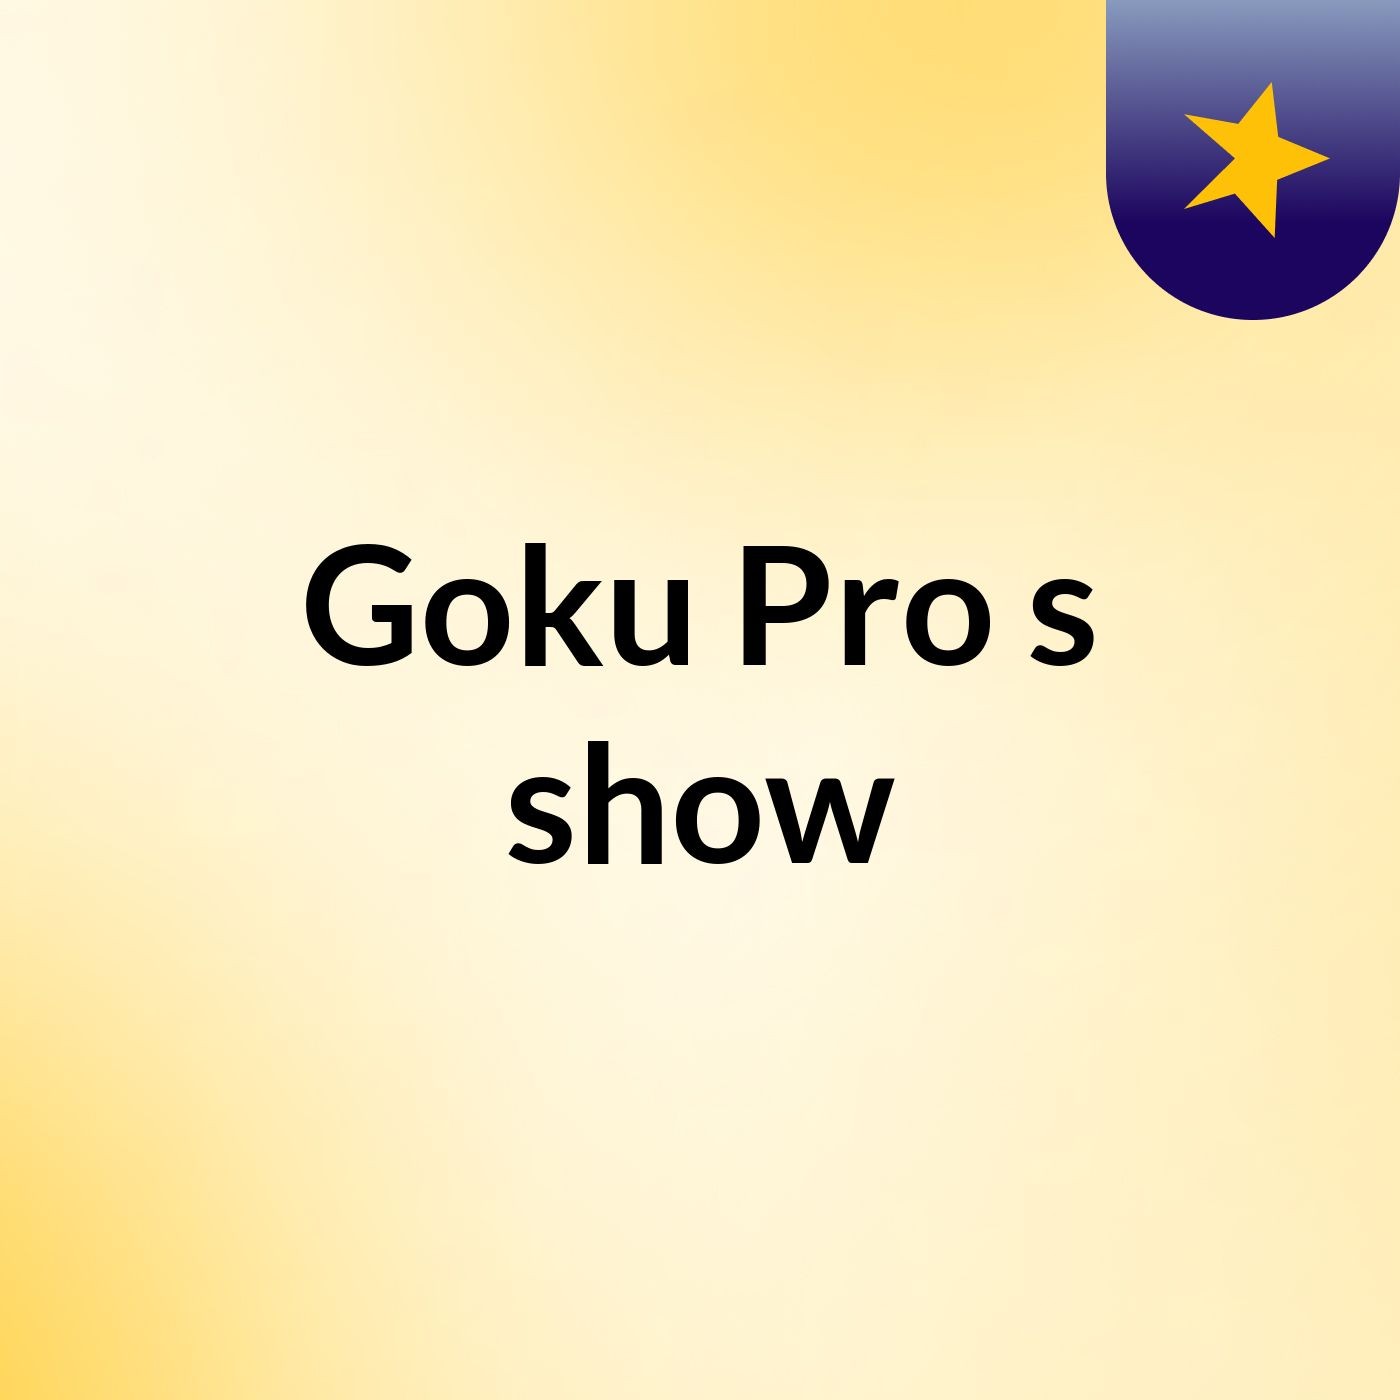 Goku Pro's show